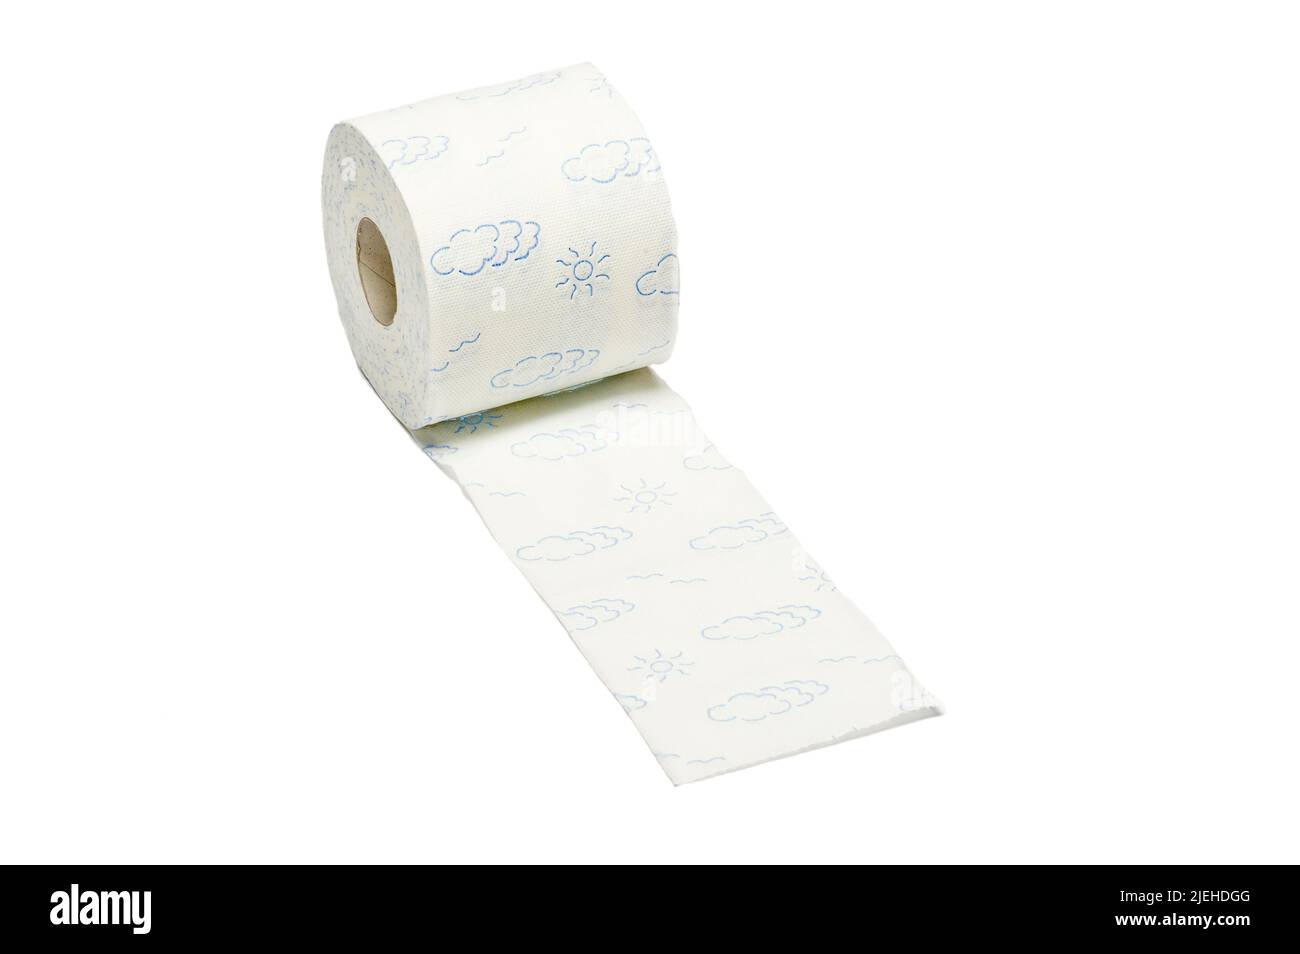 Eine Rolle Toilettenpapier, Hamsterkauf, Vorrat, Pandemie, Toilette, Intimpflege, weisser Hinterhrund, Stock Photo